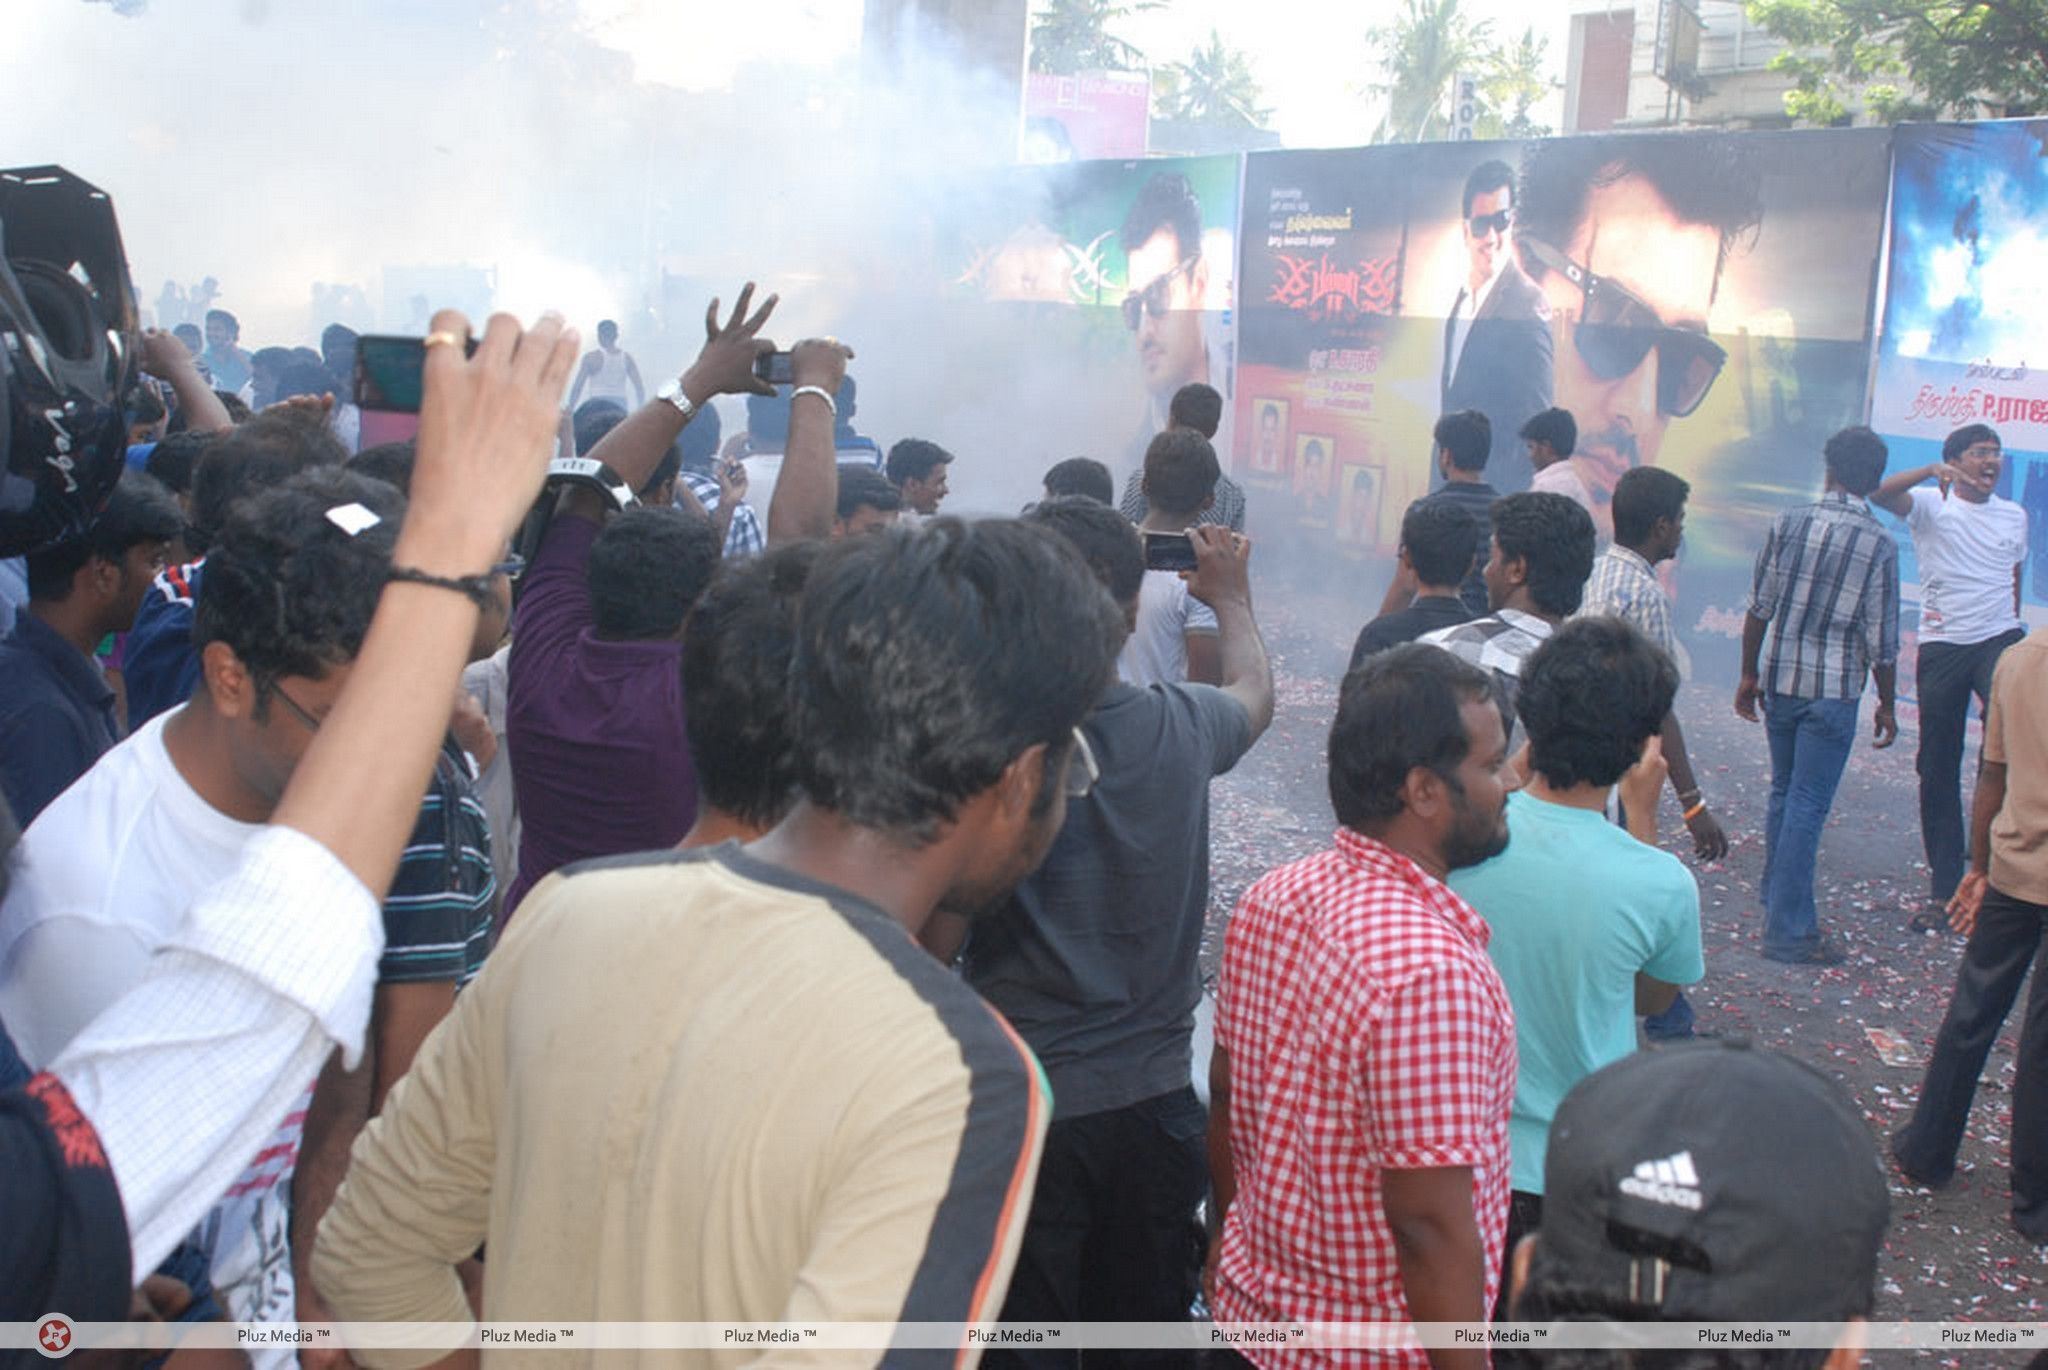 Ajith Fans Celebrate Billa 2 Release Stills | Picture 228264